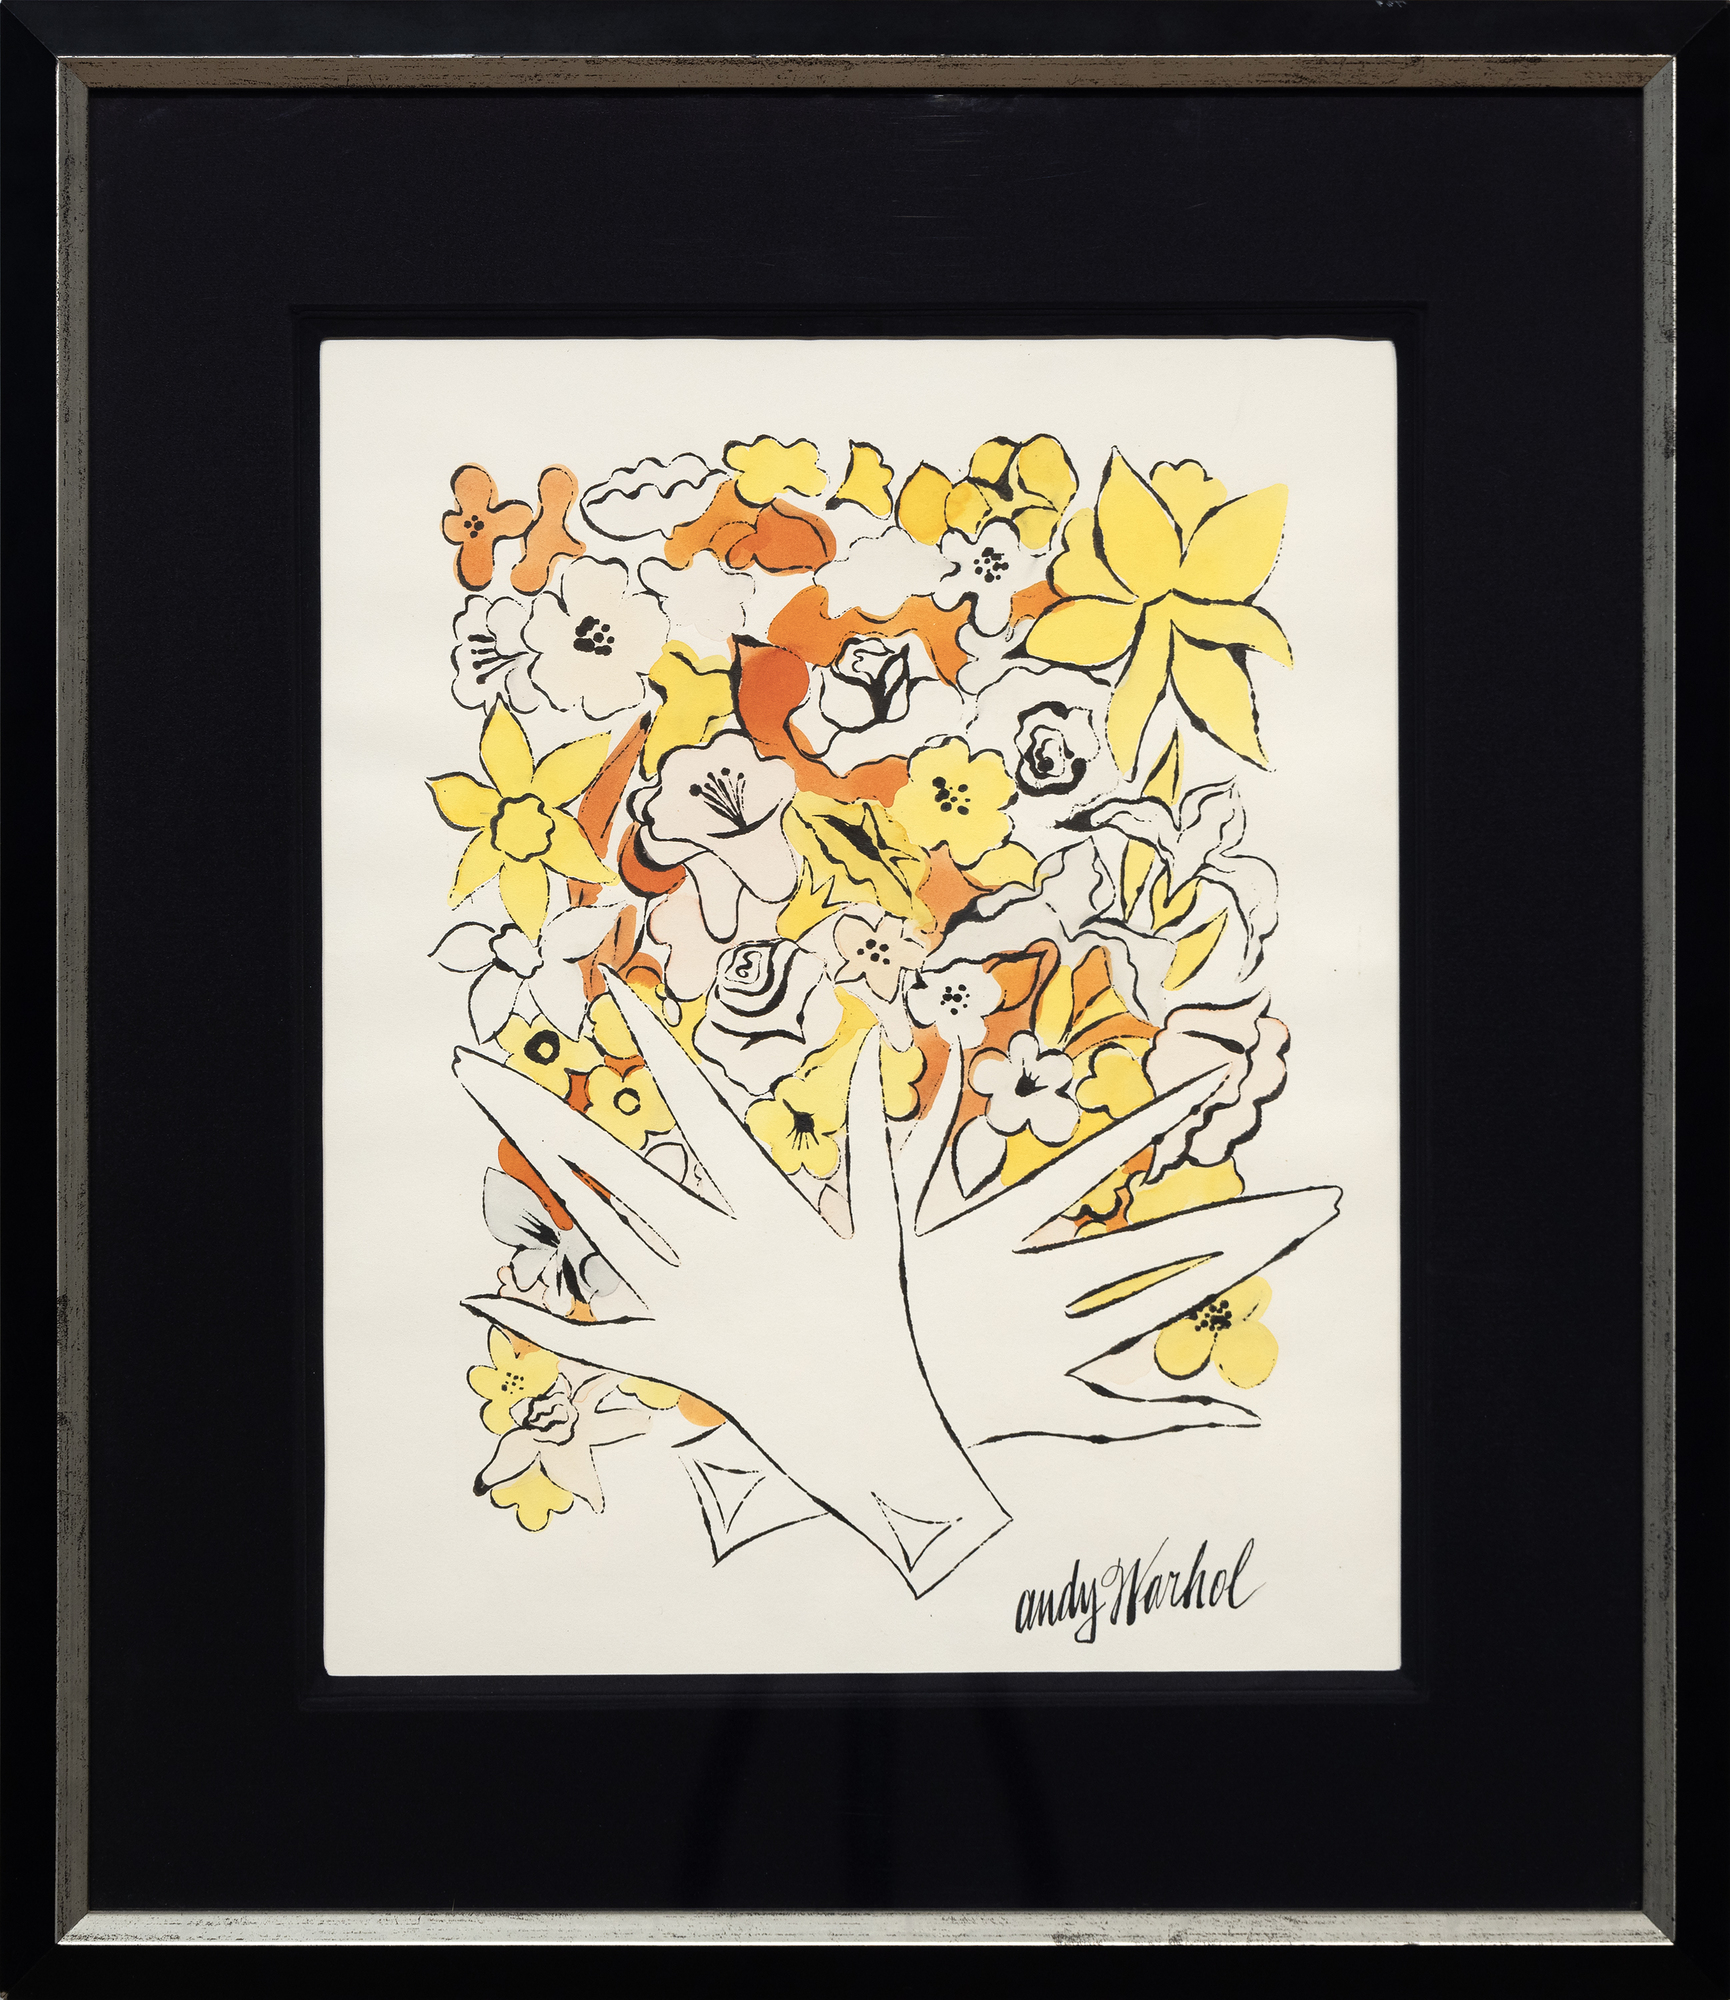 沃霍尔的水墨画和染色画常常被忽视，他善于用简练的线条将主题和元素还原为本质，每幅作品都充满了奇妙的趣味性。这些作品经常提醒我们，如果艺术不复杂、自由，就能最有效地传播幽默和奇思妙想。无题，花朵》是沃霍尔 1960 年著名的《Vogue》版面设计的先驱，将荧光色的花朵图画结合在一起。这幅画预示了沃霍尔早期将线条与色彩分离的倾向，这一手法后来赋予了他的丝网版画抽象的直接性。